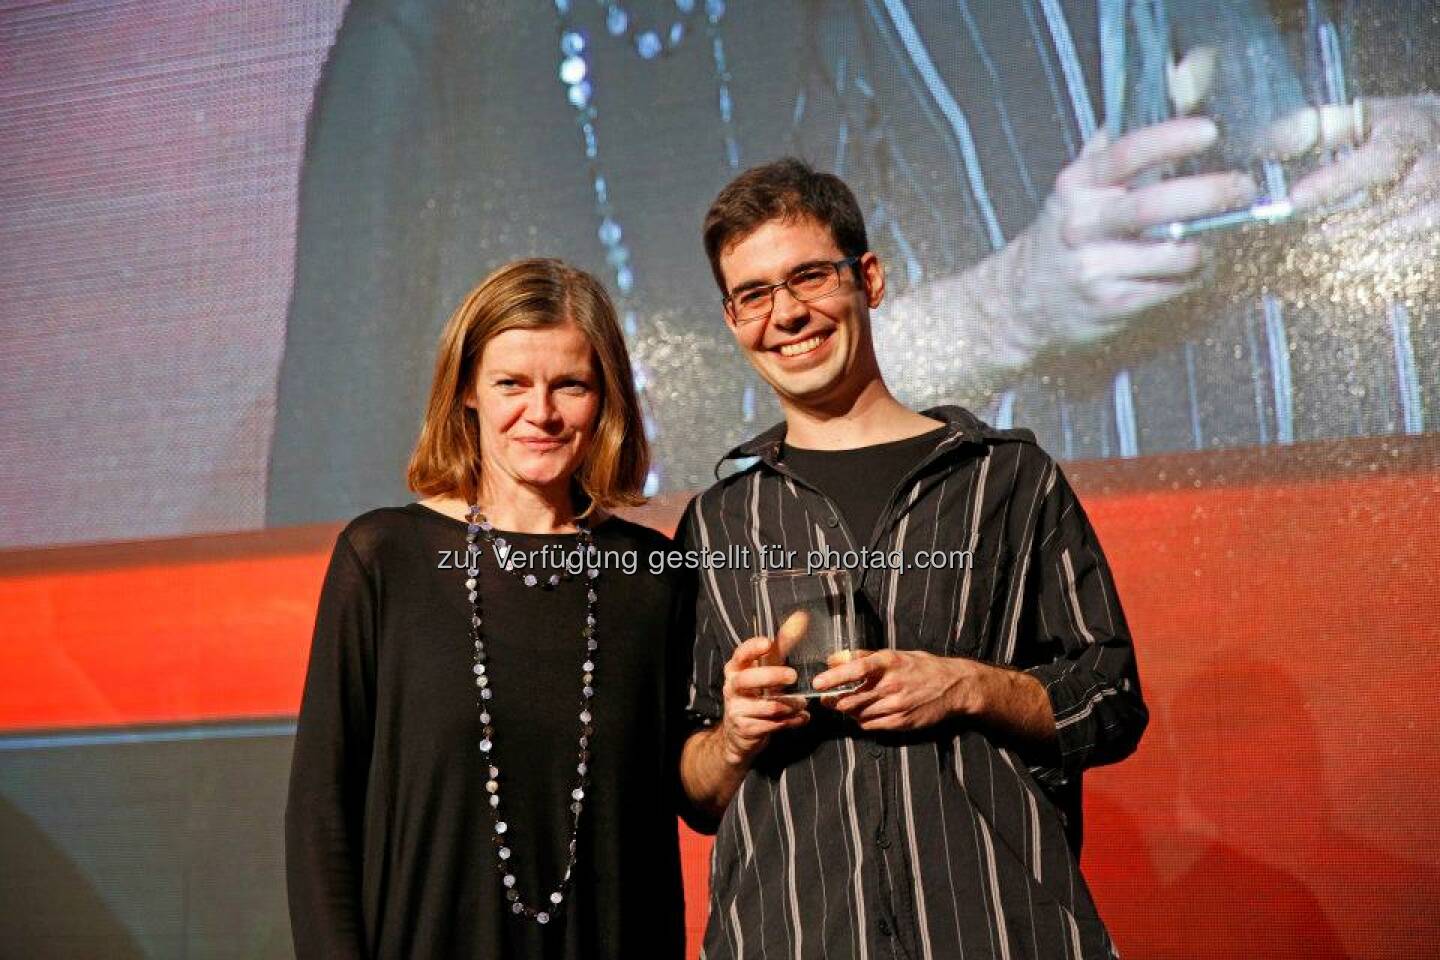 Tagtool erhielt von Jurymitglied und Gemeinderäten Sybille Straubinger den Content Award für die beste App